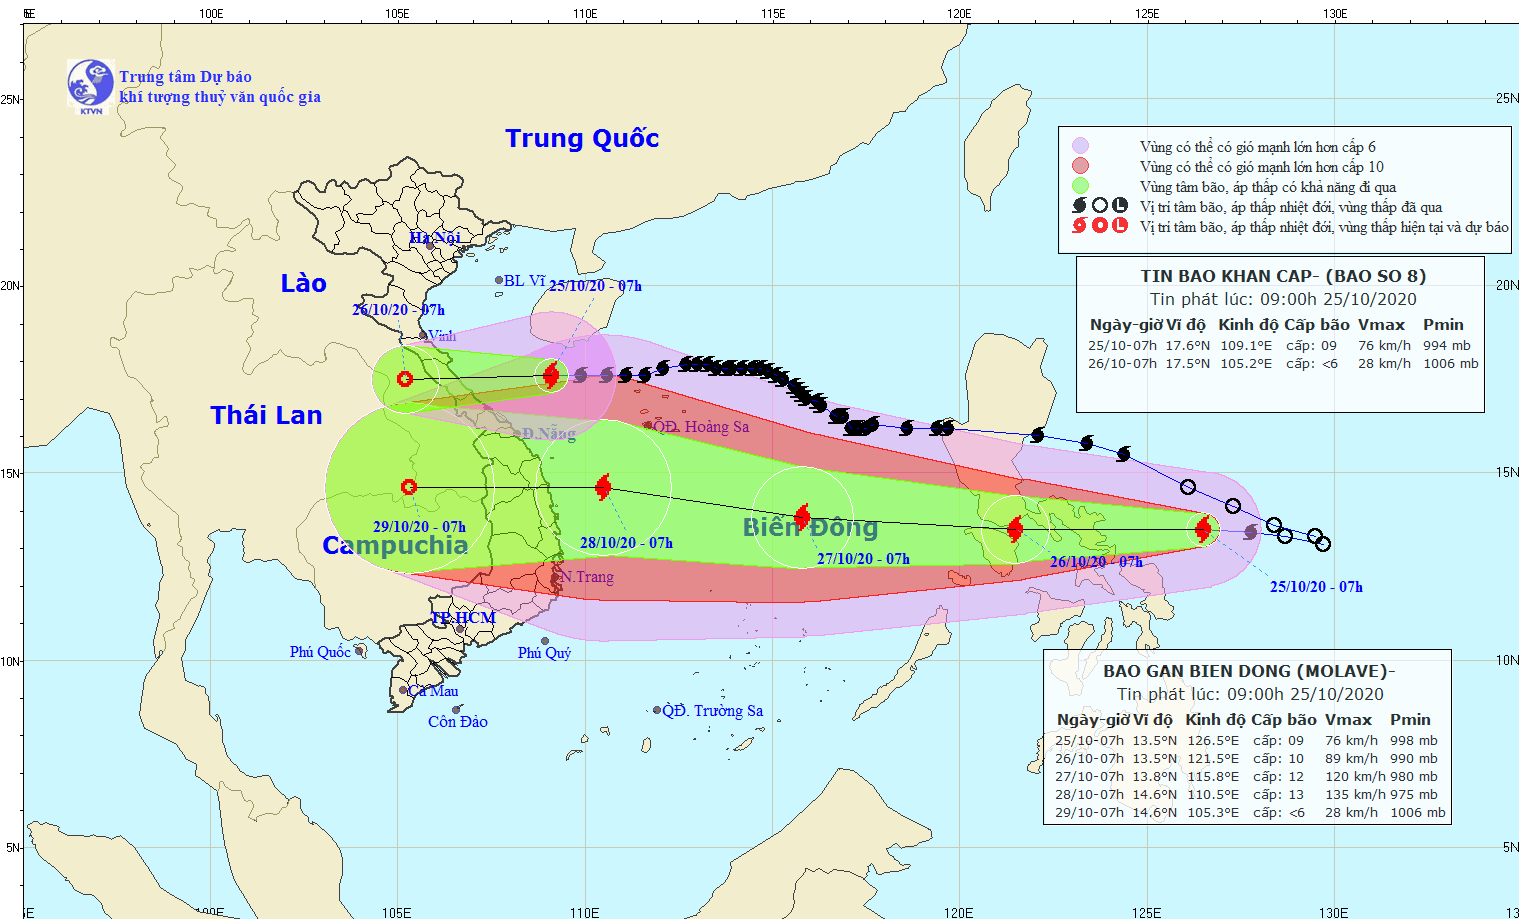 Bão số 8 sắp áp sát bờ biển Hà Tĩnh, xuất hiện bão số 9 trên biển Đông